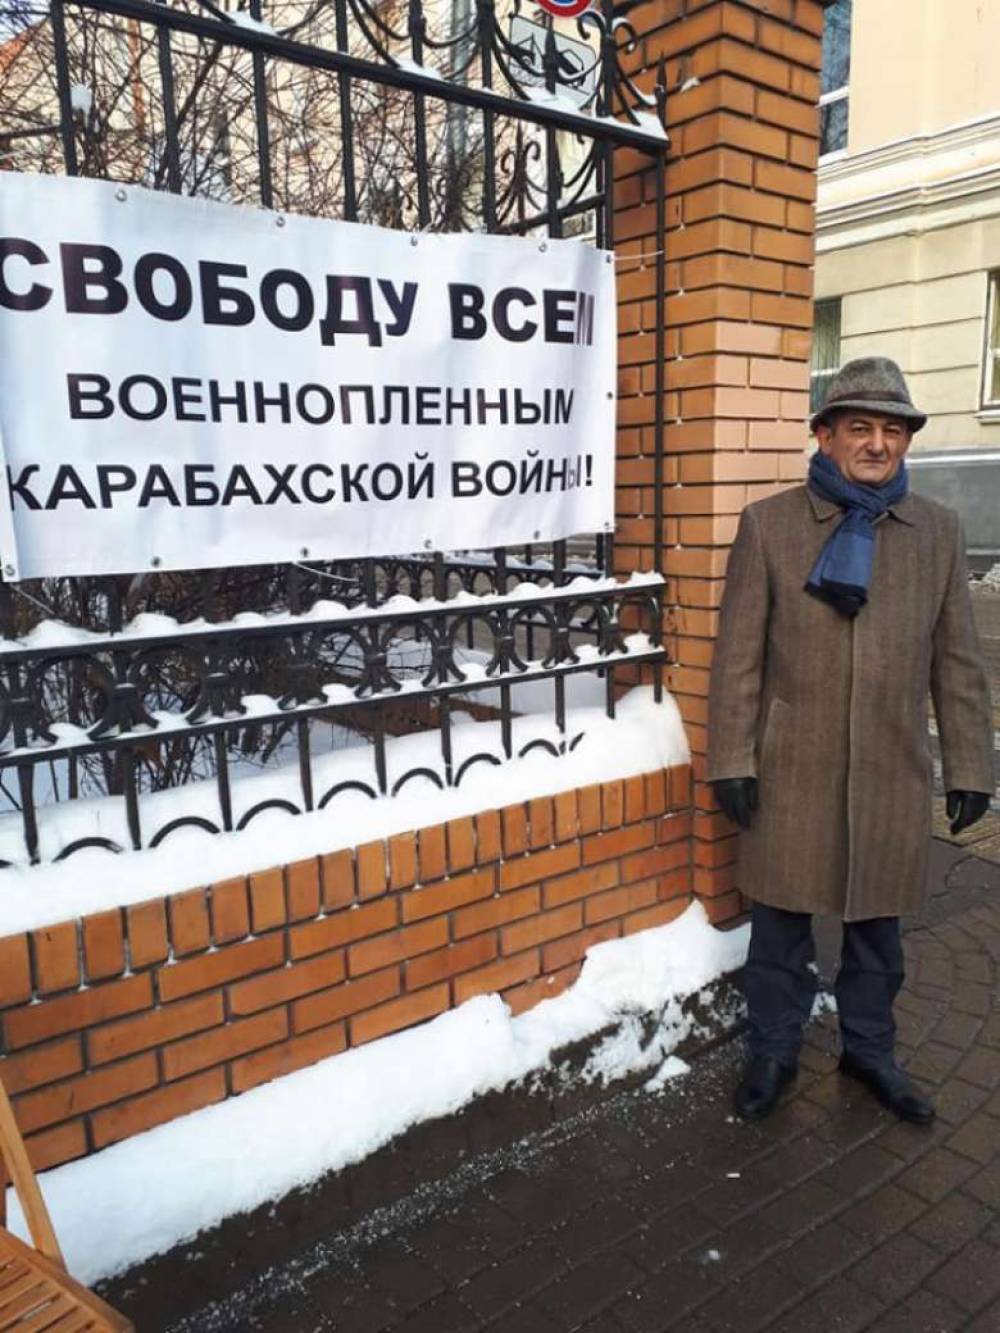 Գրիգոր Կետցյանը միայնակ ակցիա է իրականացնում ՌԴ-ում Ադրբեջանի դեսպանատան դիմաց